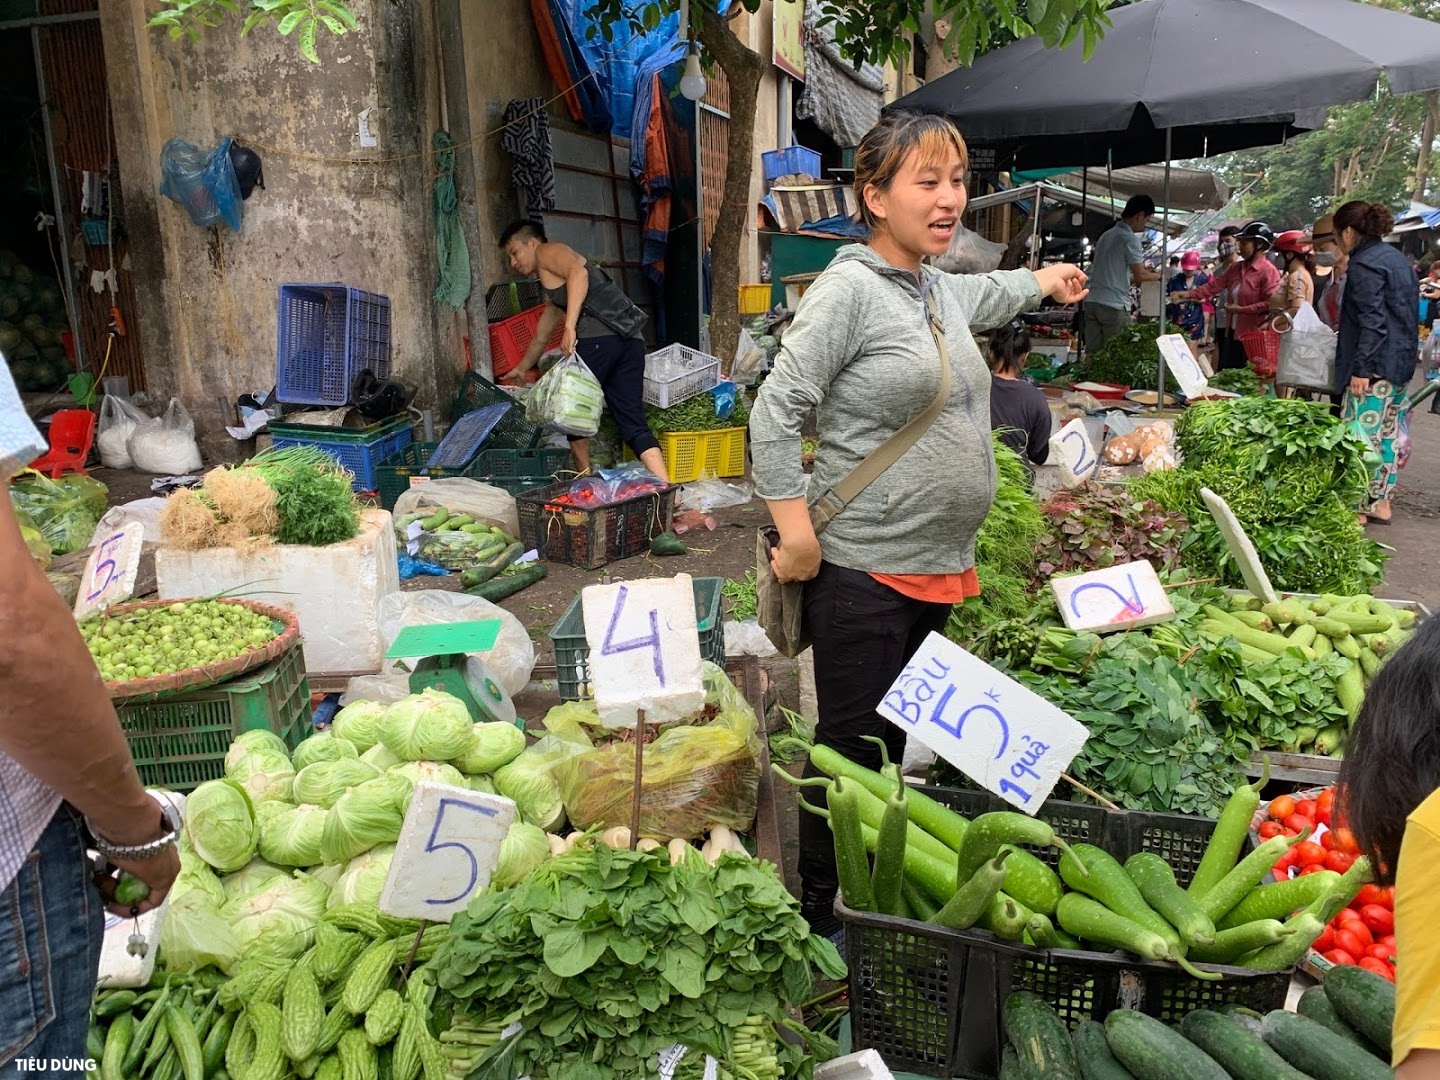 Đi chợ mấy ngày này cực đã, bà nội trợ cầm 10.000 đồng đủ rau xanh ăn cả ngày cho gia đình - Ảnh 3.